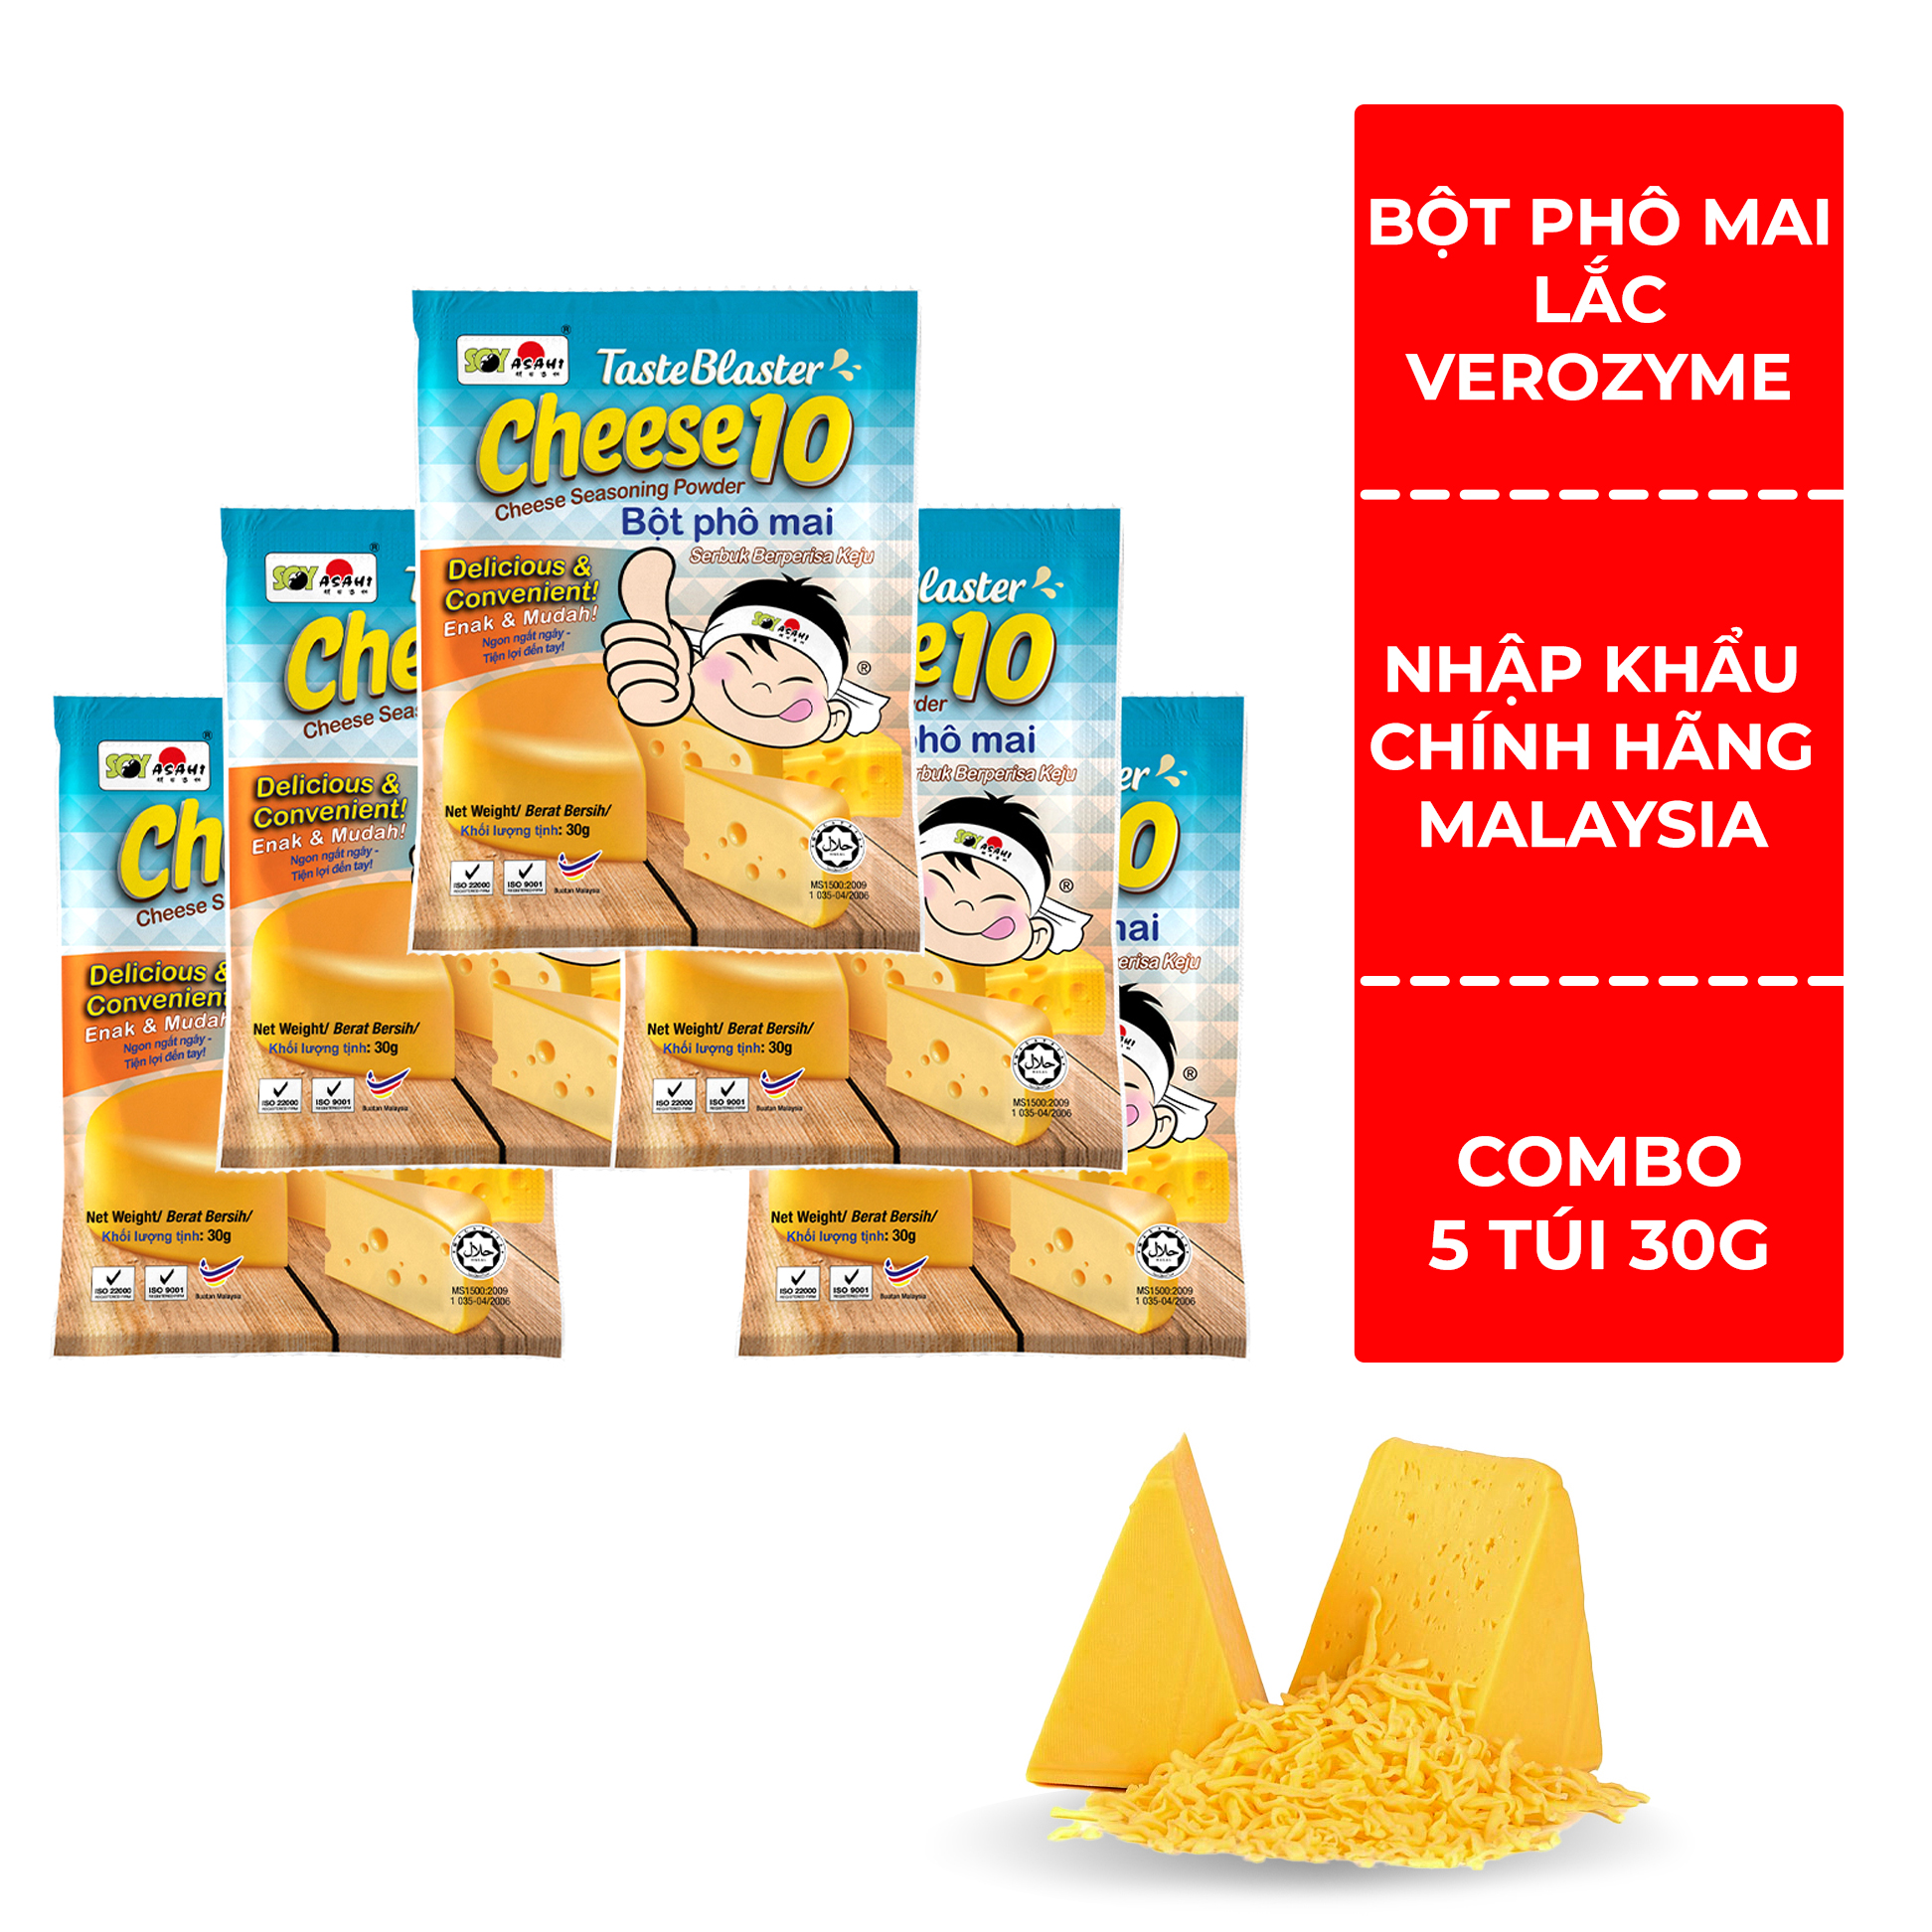 Combo 5 Gói Bột Phô mai Verozyme Malaysia Cheese Taste Blaster 30g/ gói - Thơm ngon tiện dụng bột lắc khoai lắc gà vô cùng tiện dùng cho gia đình bạn